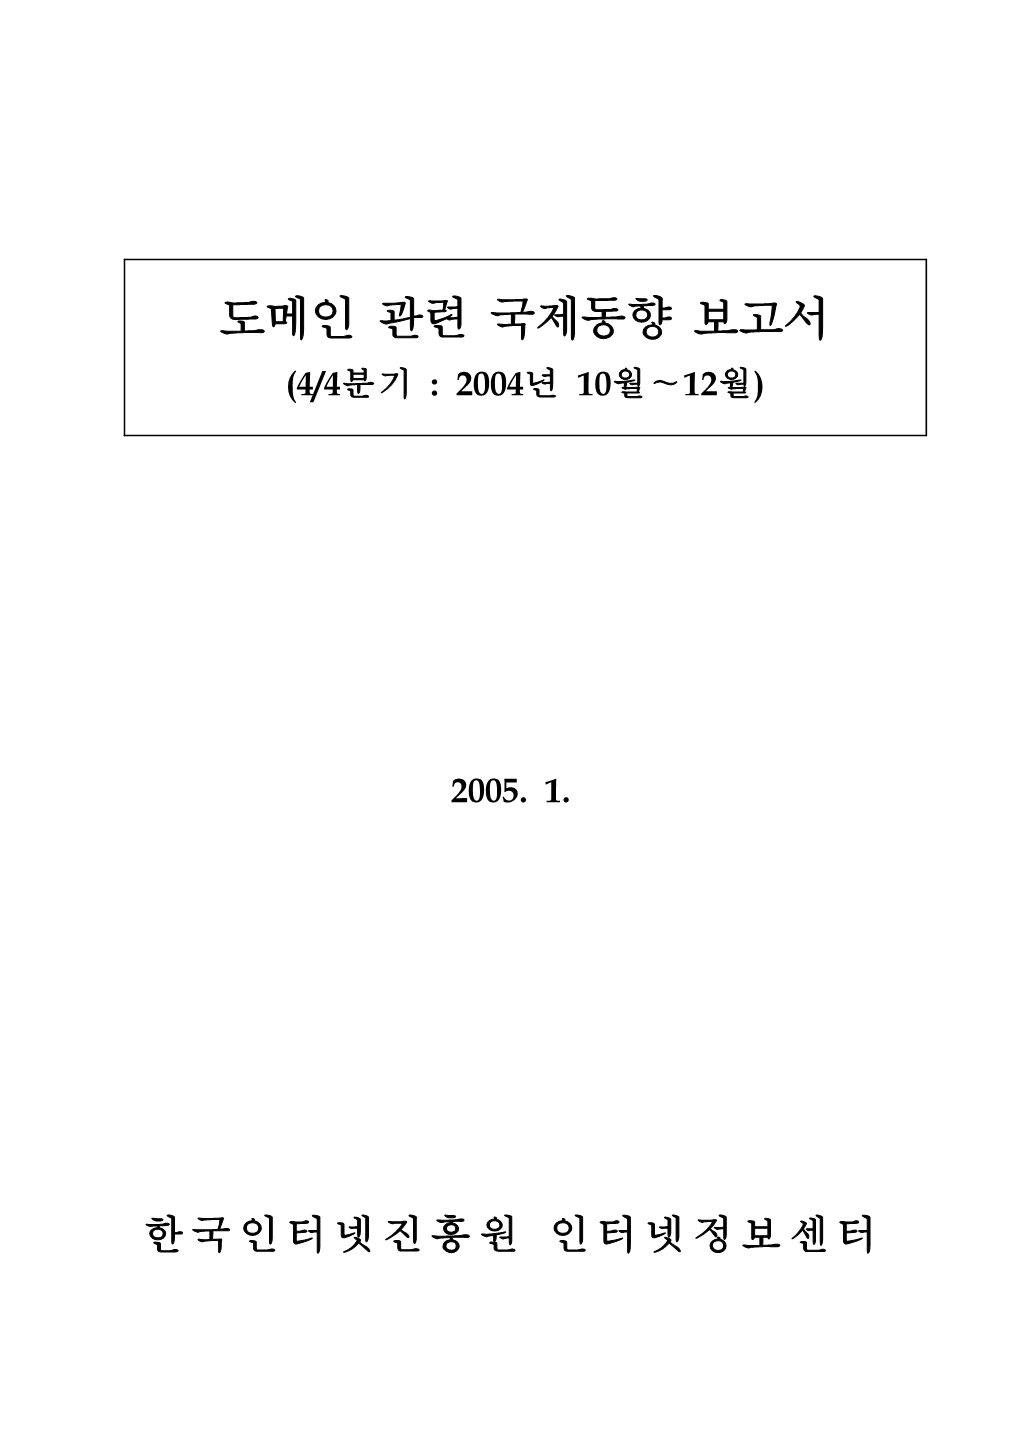 도메인 관련 국제동향 보고서 (4/4분기 : 2004년 10월∼12월)